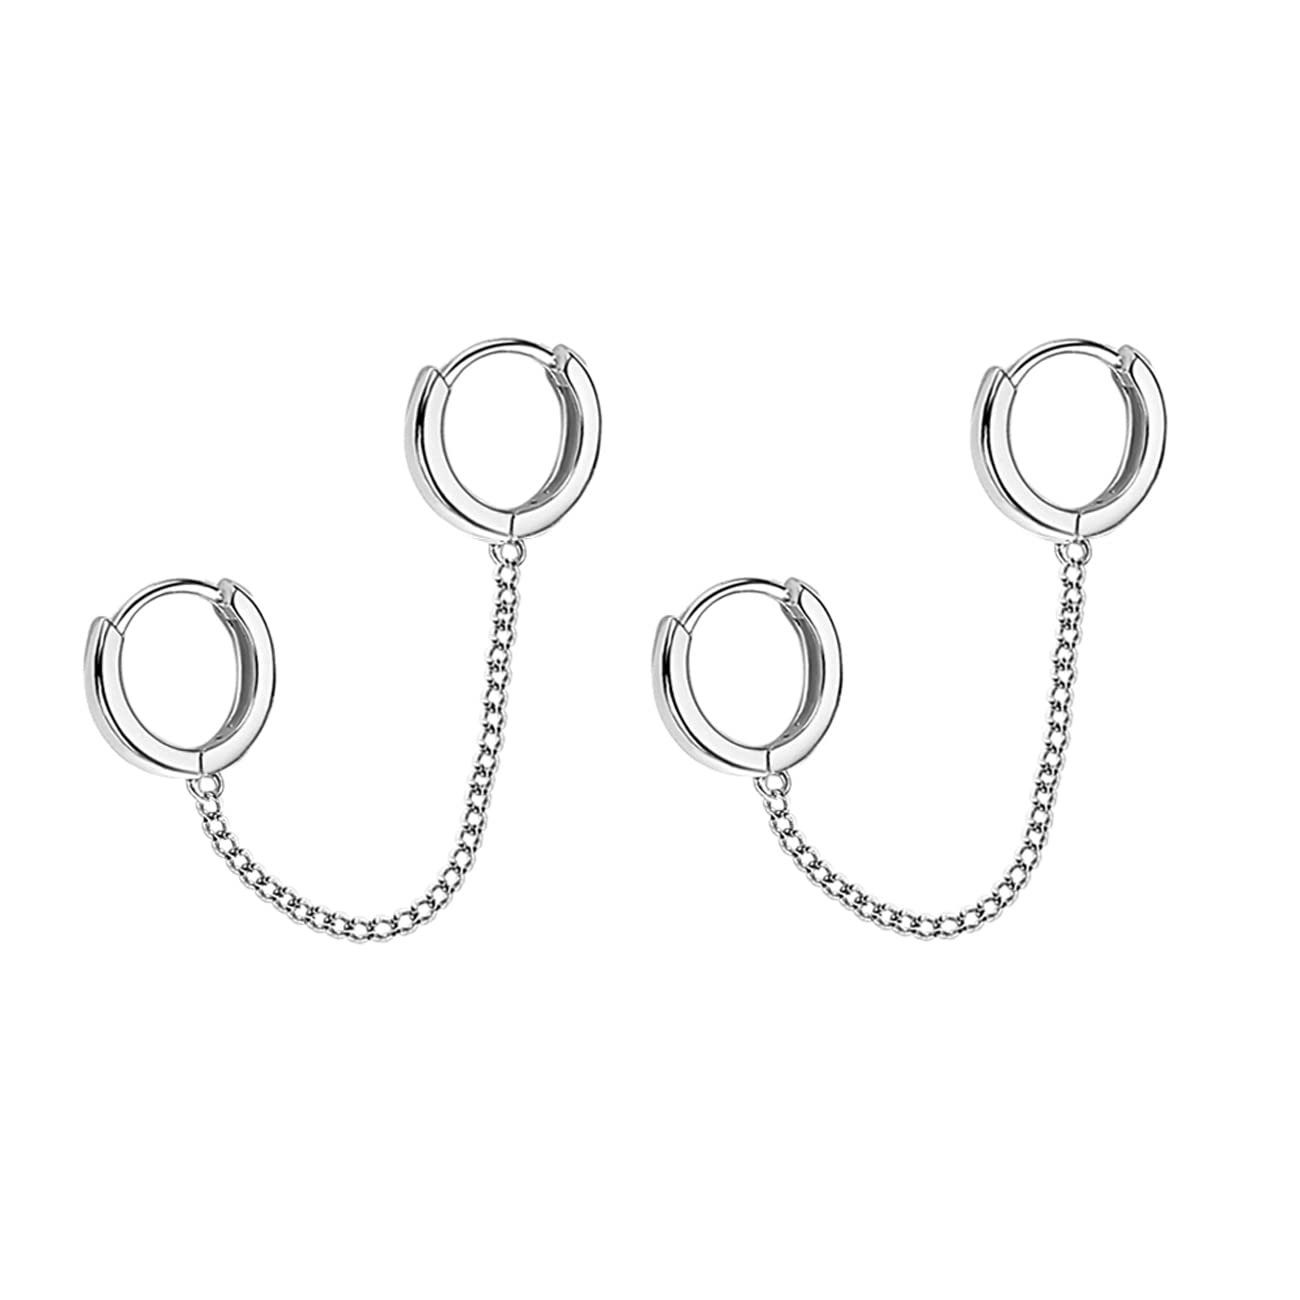 POCHUMIDUU Paar Ohrhänger 925 Sterling Silber Double Hoop Ohrringe Kette (2-tlg., Double Piercing Ohrringe zwei Löcher), für Frauen Teenager Mädchen